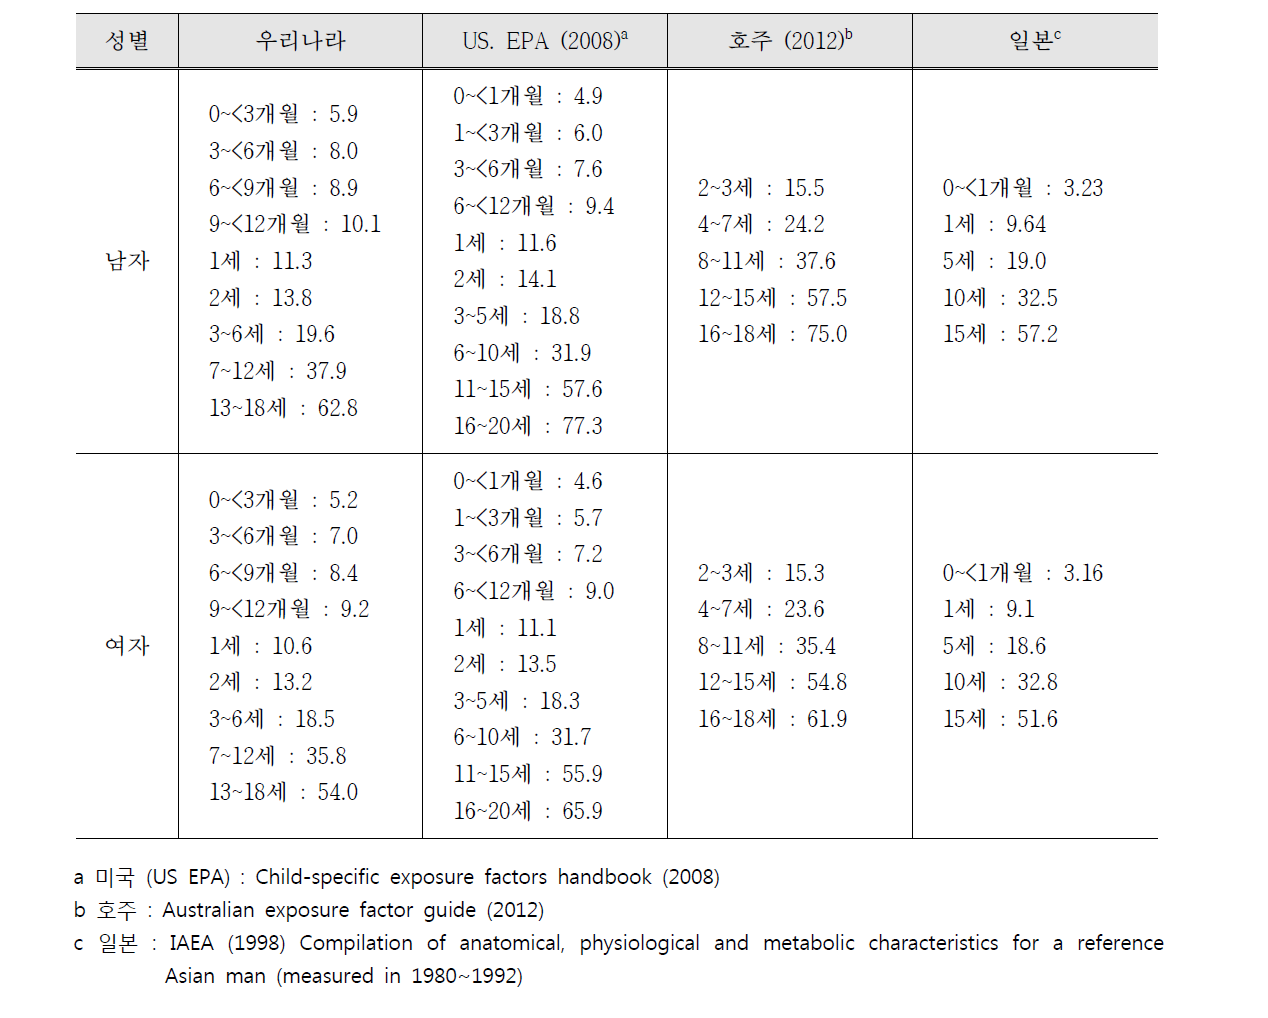 한국 어린이와 외국 어린이의 평균 체중 비교